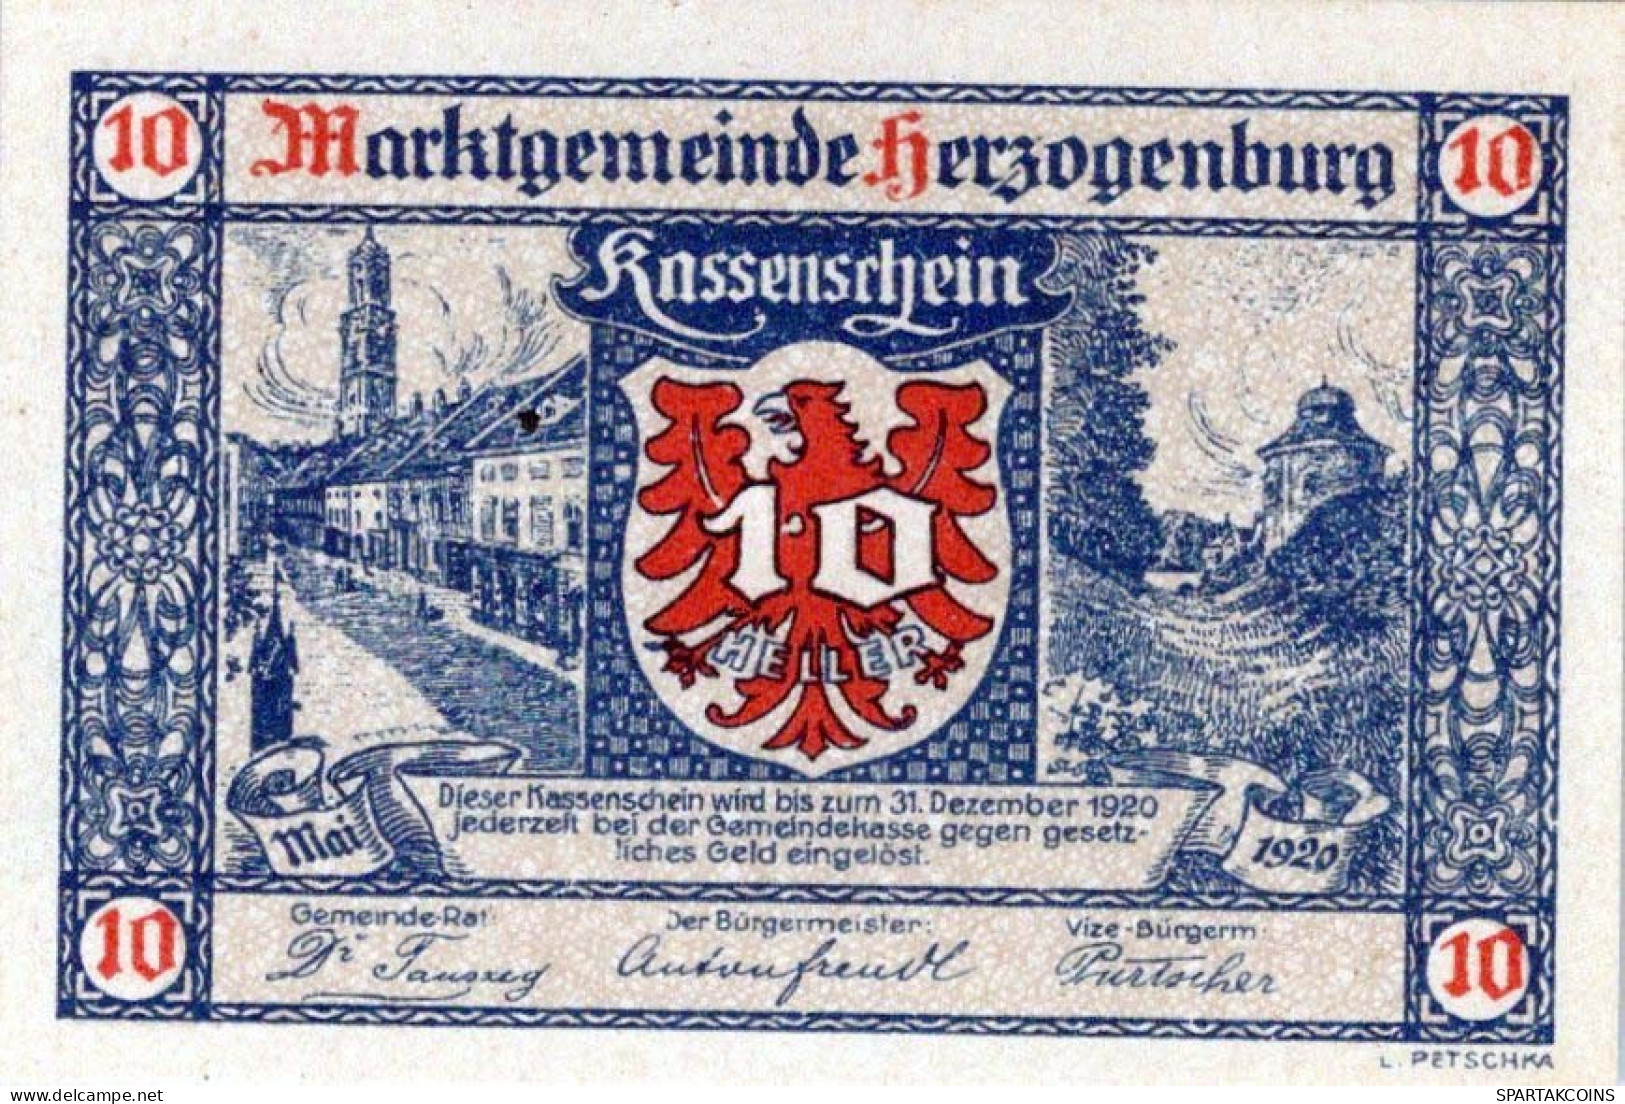 10 HELLER 1920 Stadt HERZOGENBURG Niedrigeren Österreich Notgeld Papiergeld Banknote #PG610 - [11] Local Banknote Issues